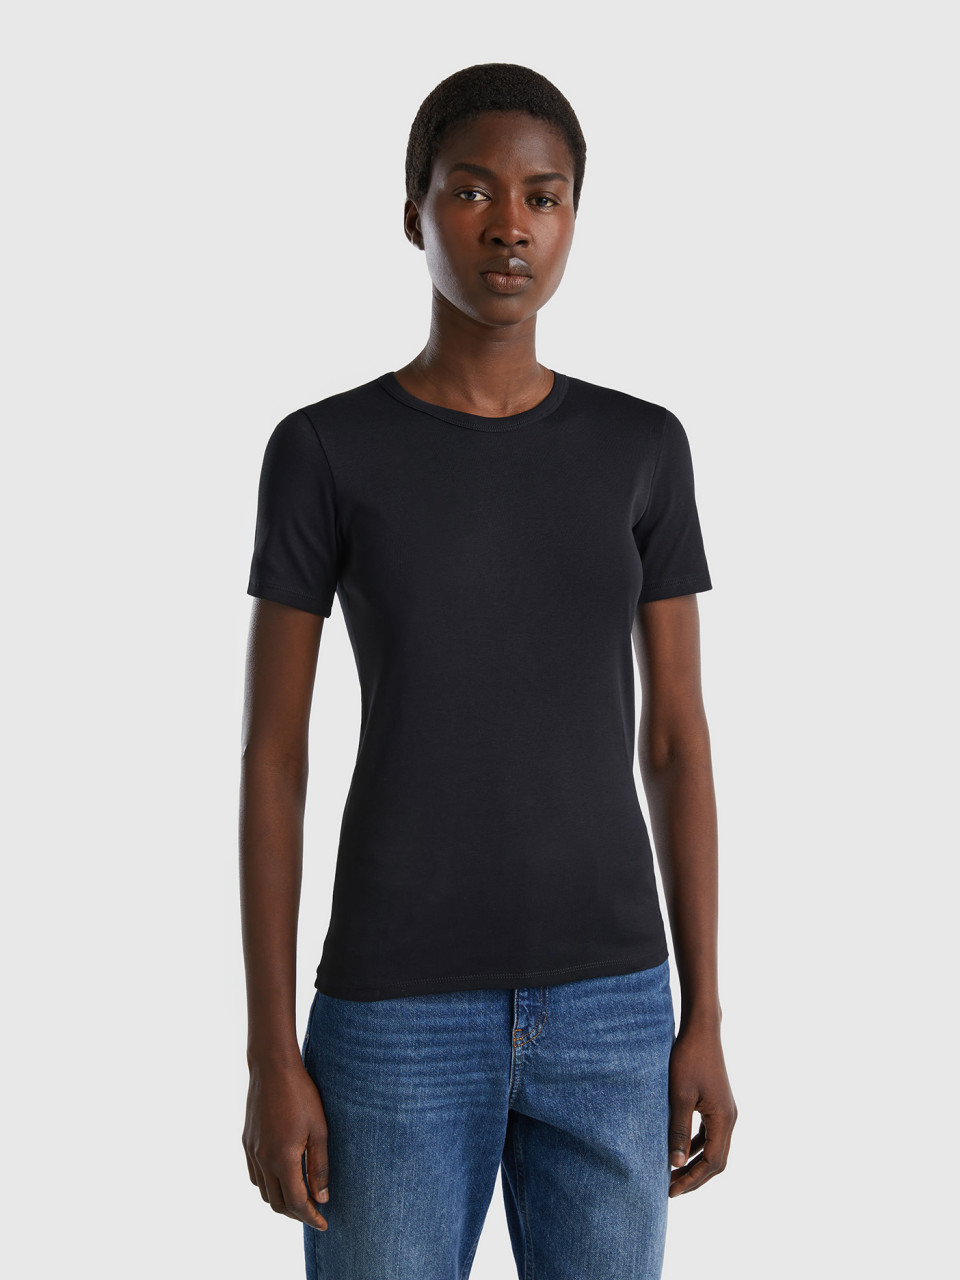 Benetton, Long Fiber Cotton T-shirt, Black, Women